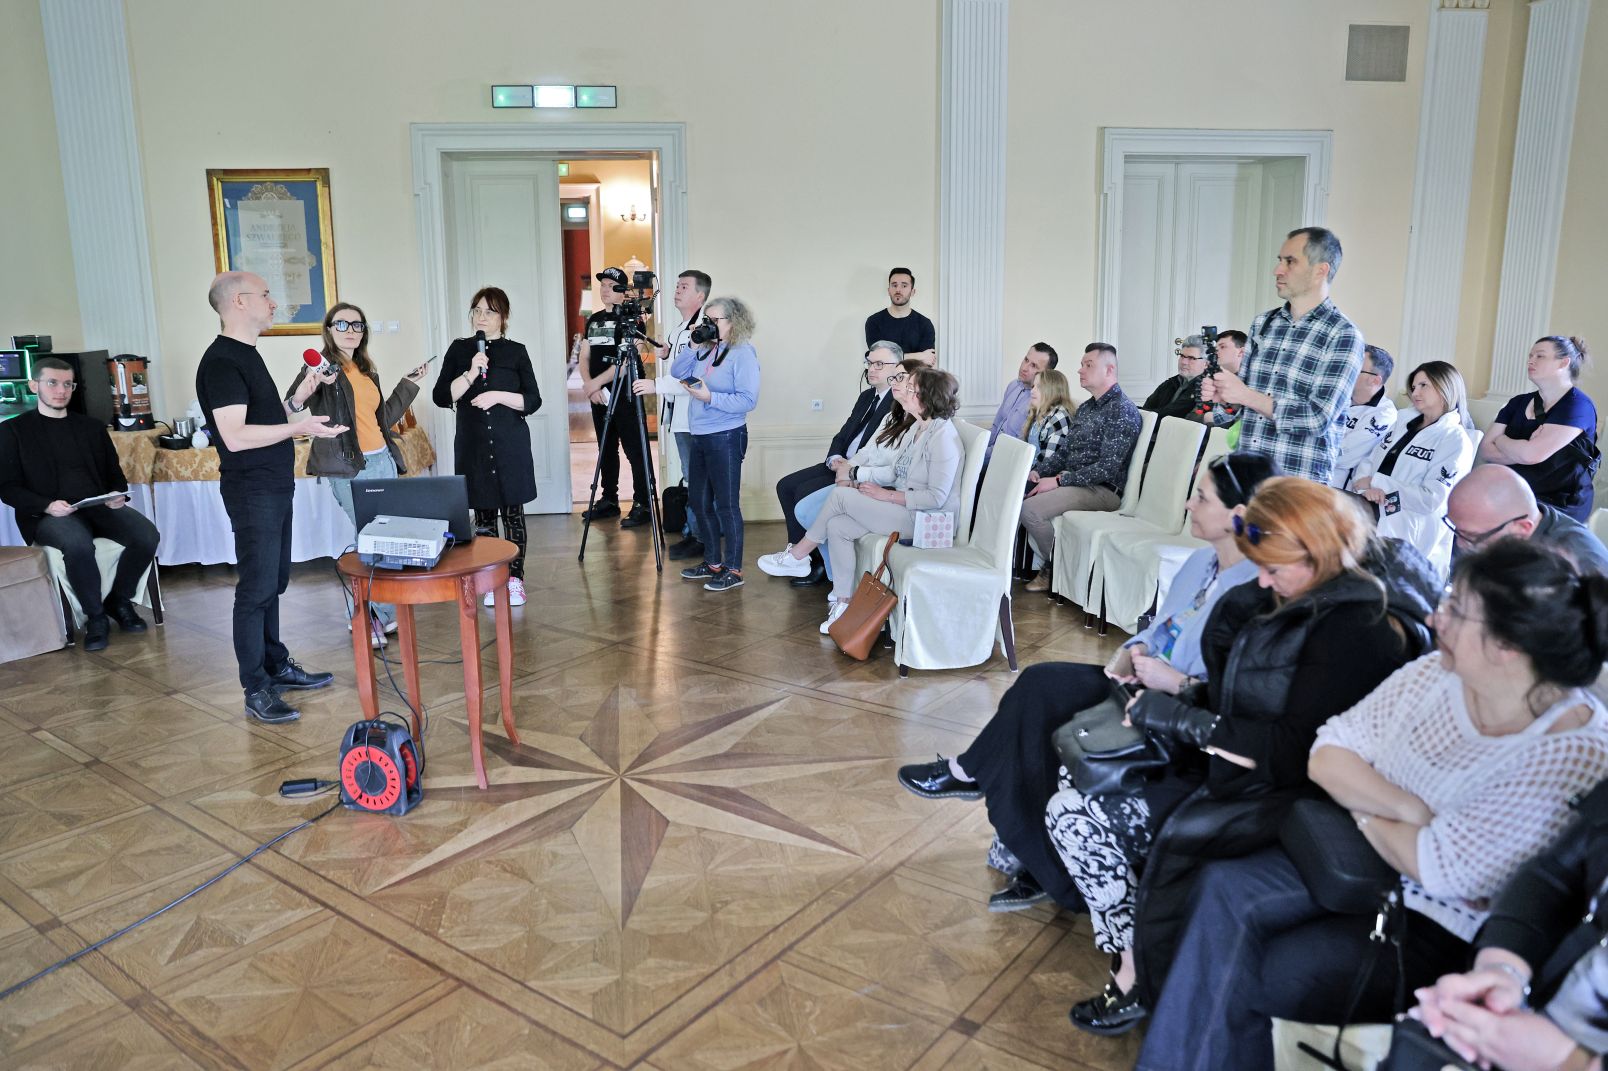 Konferencja prasowa z Oscarem Nilssonem w pałacu w Ostromecku, widok ogólny sali z publicznością